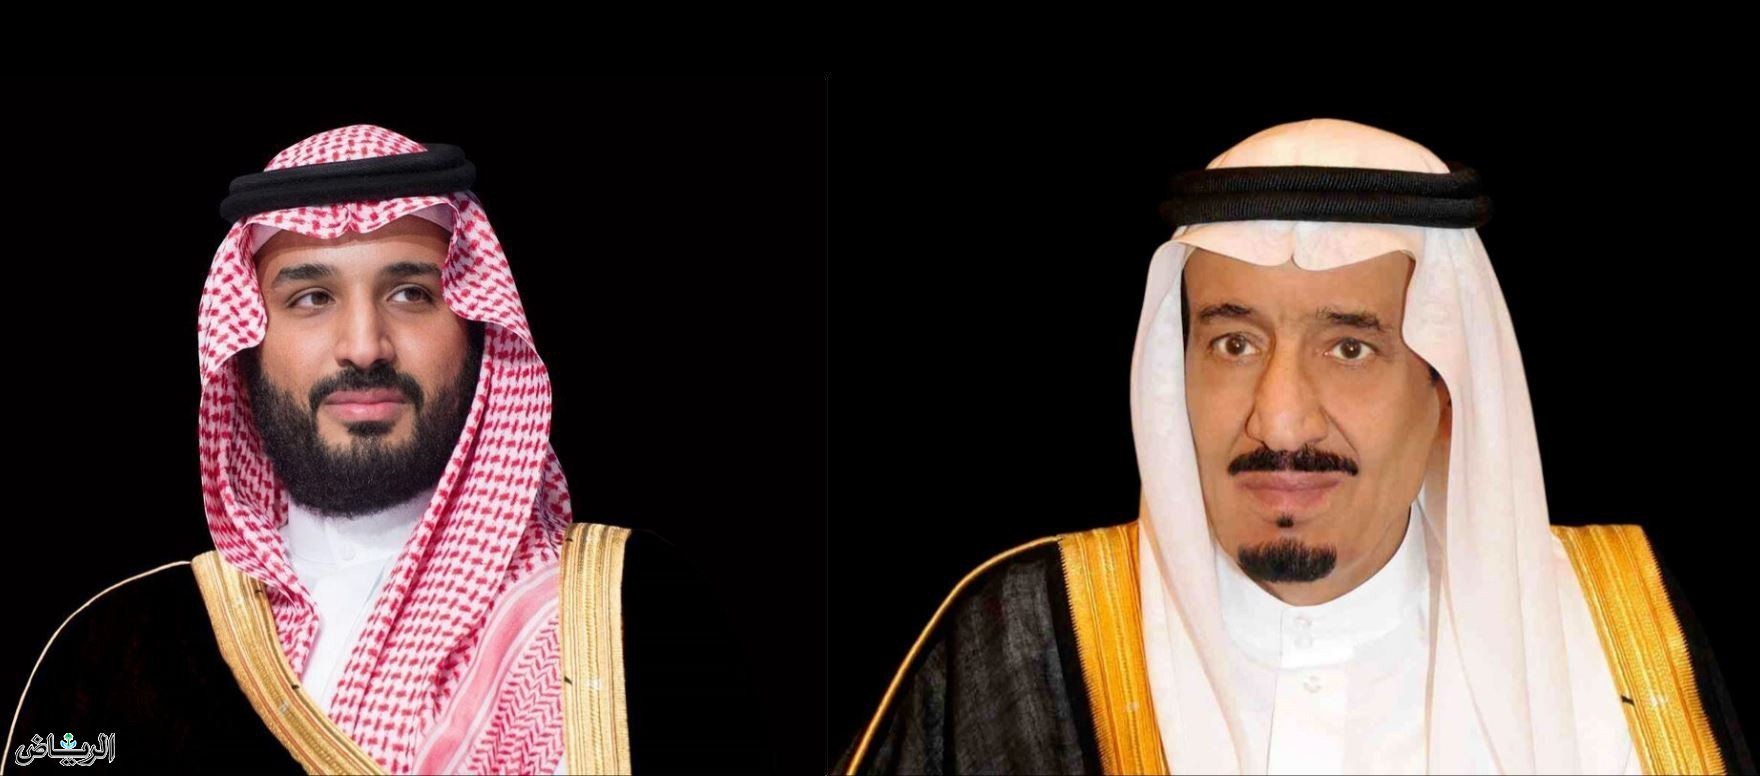 Руководство Саудовской Аравии выразило соболезнования в связи с терактом в Москве